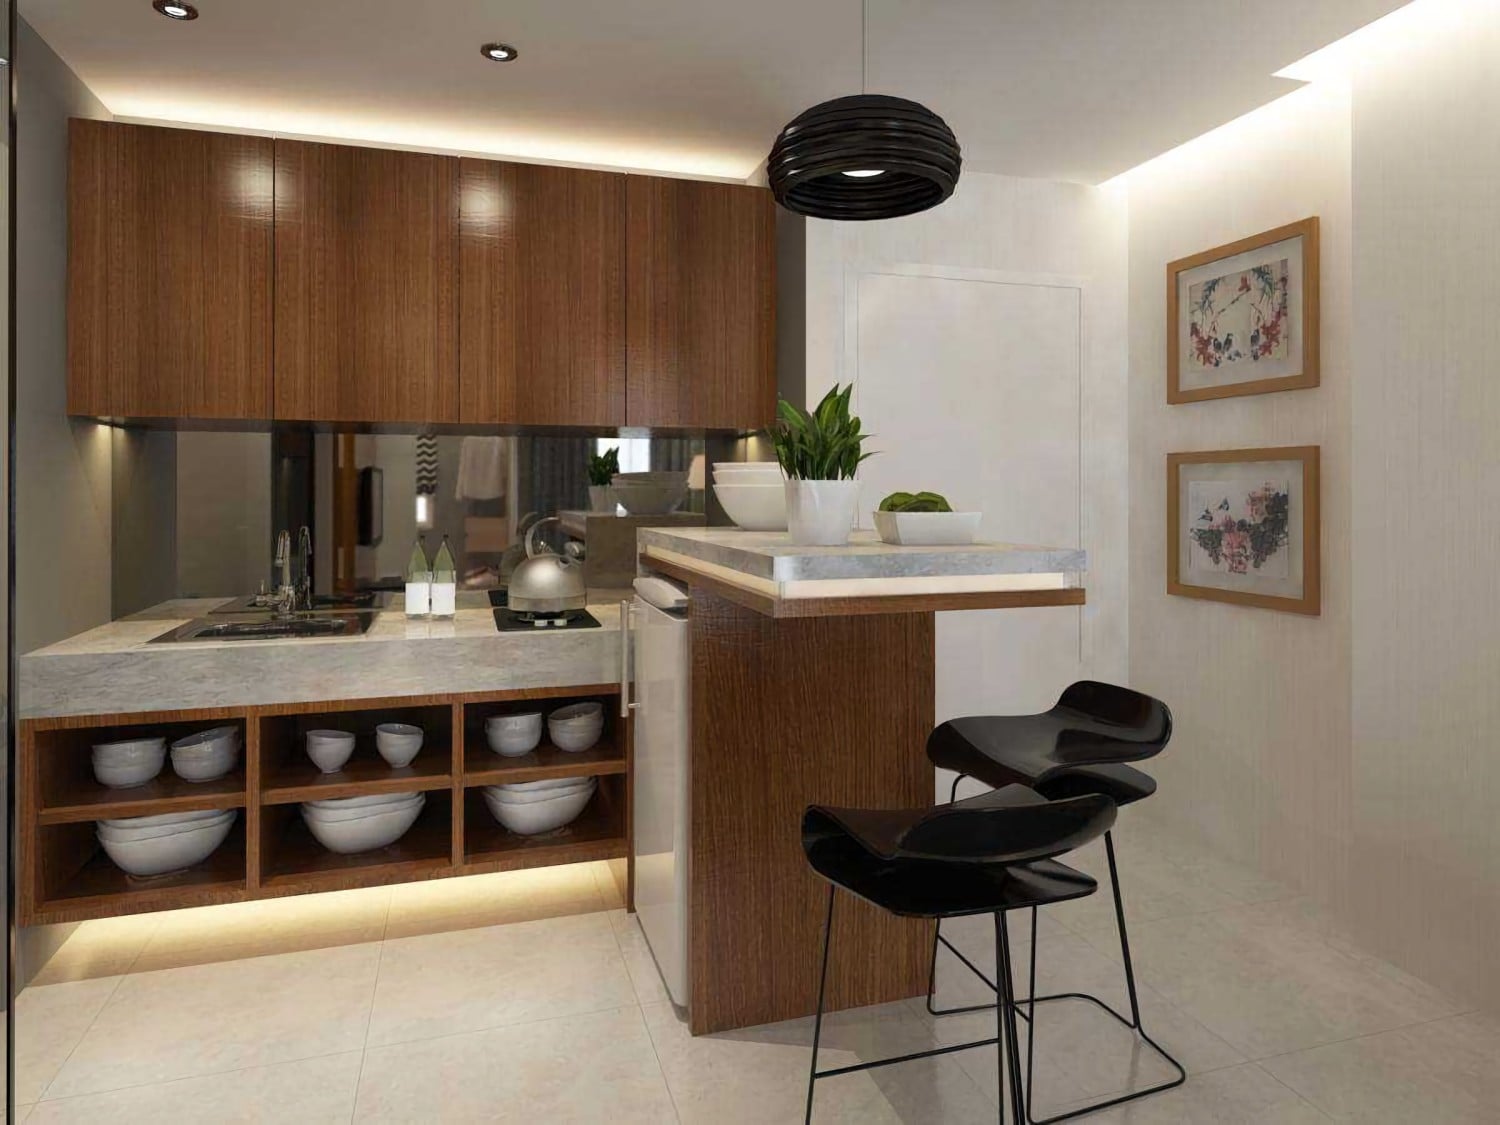 65 Gambar Desain Dapur Rumah Modern Paling Populer di Dunia